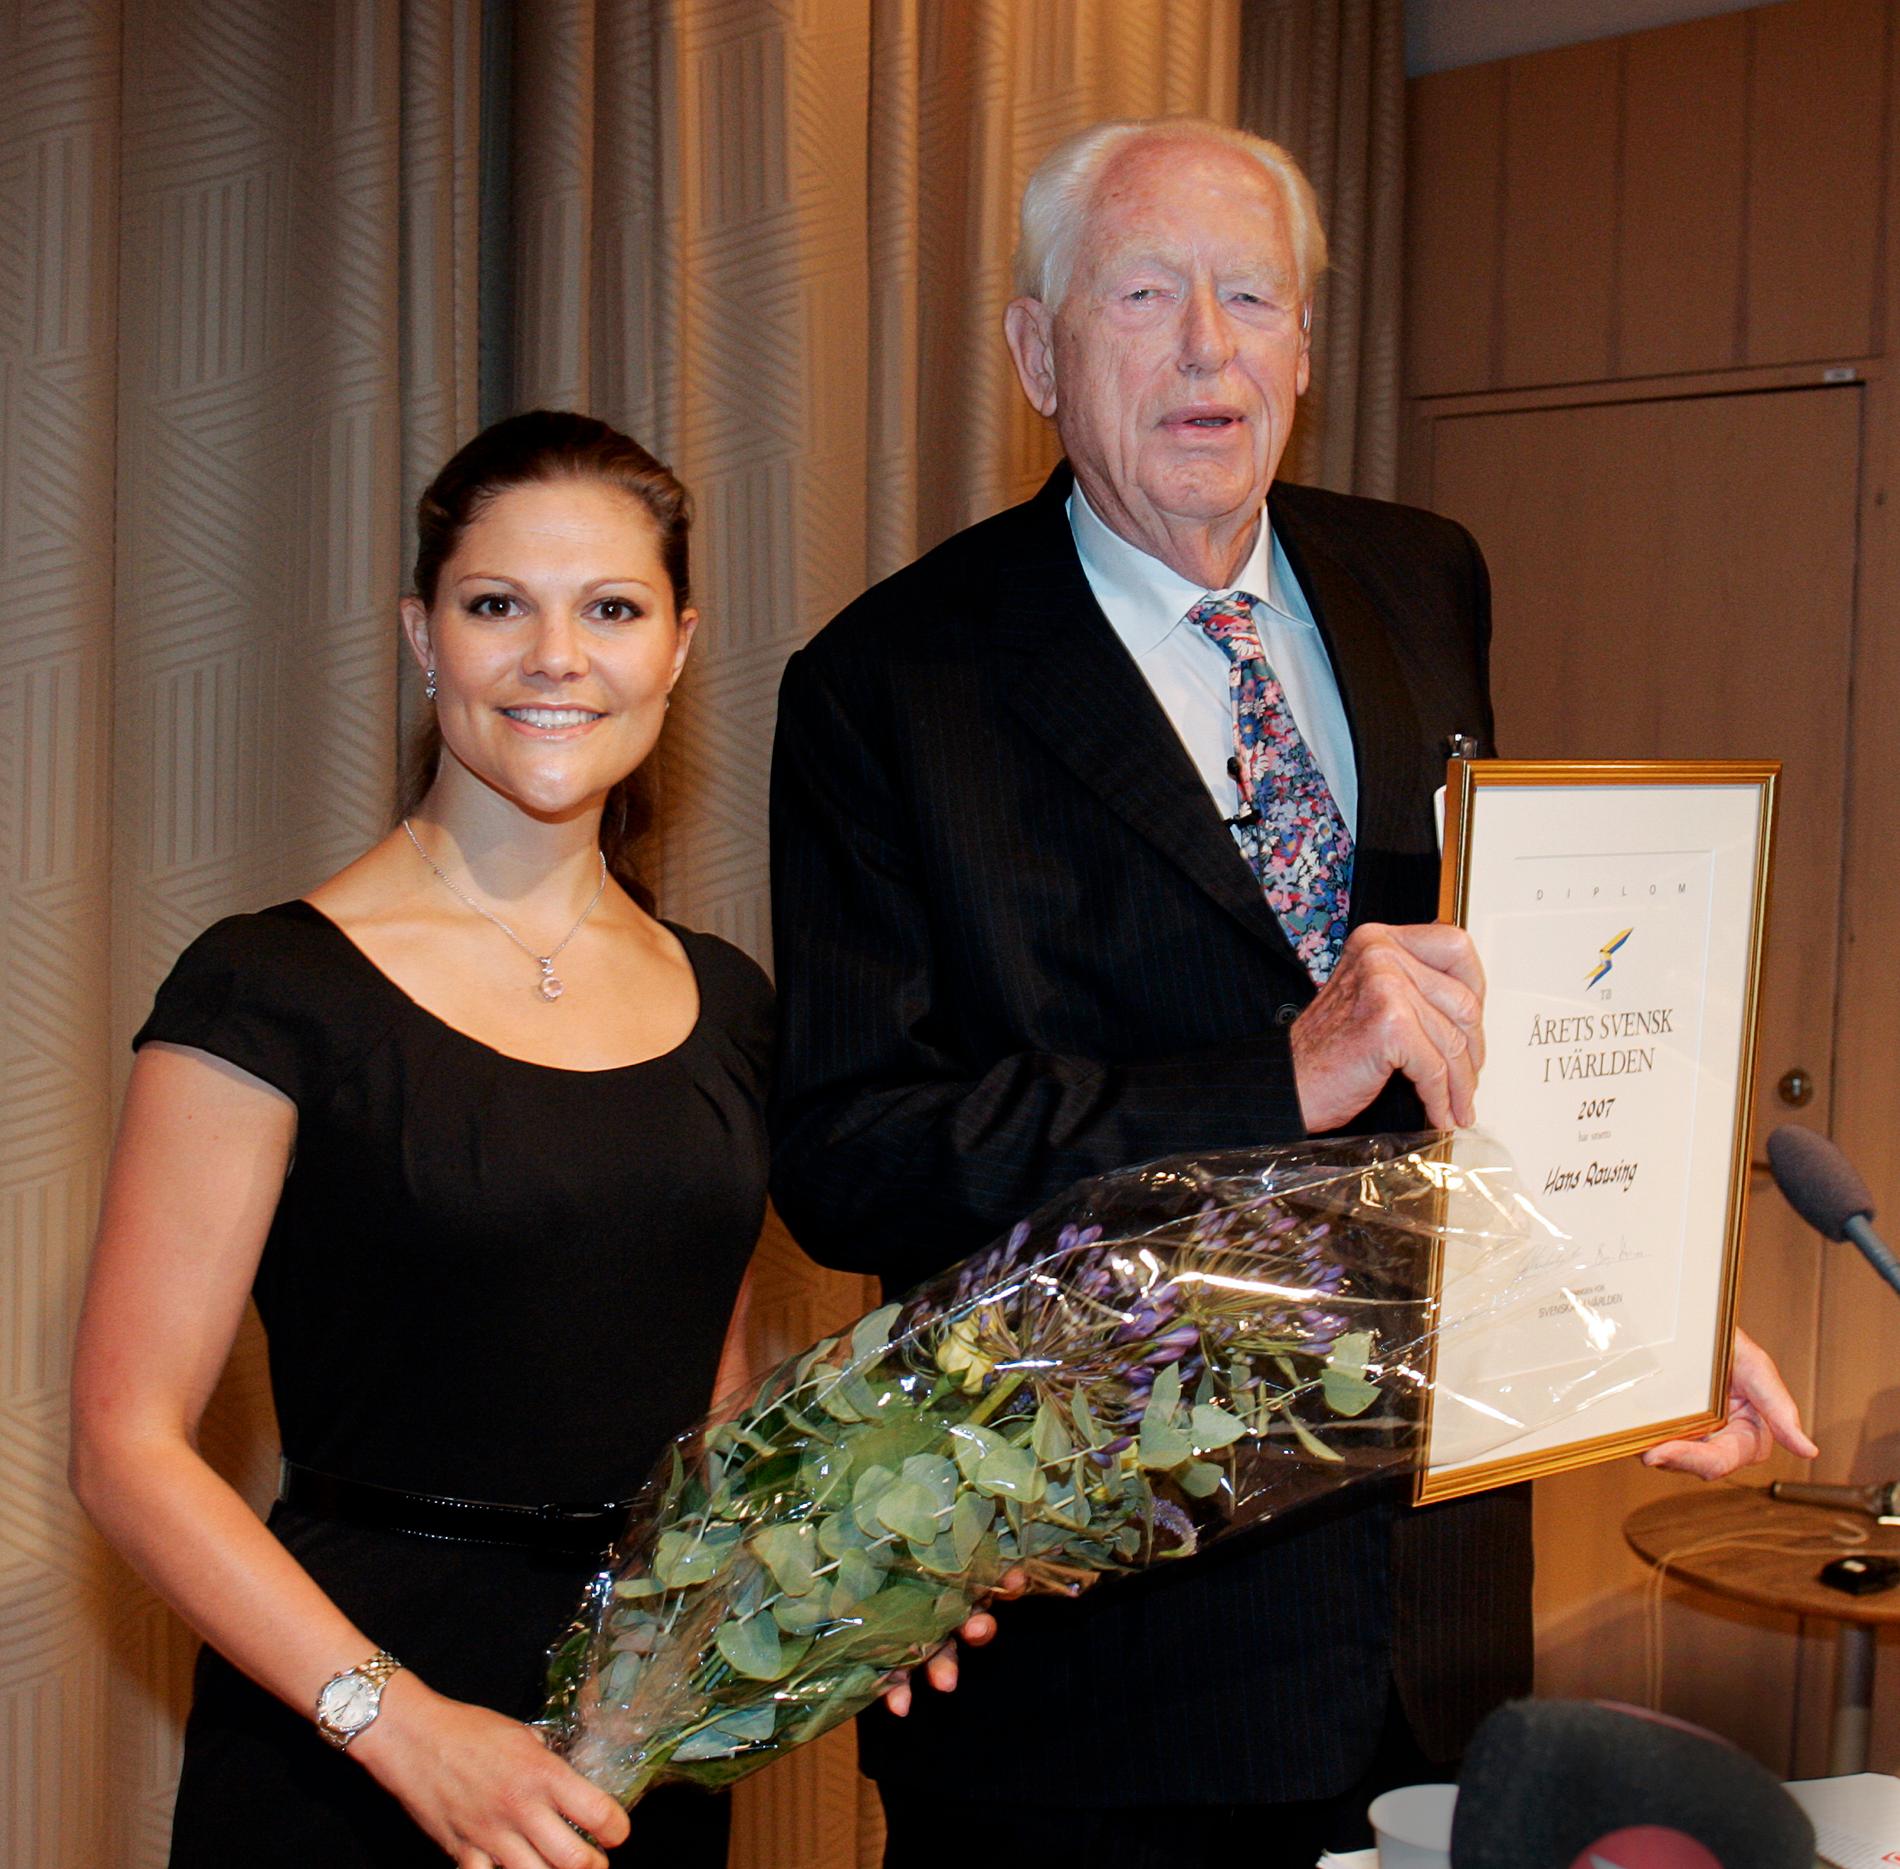 Föreningen Svenskar i Världen utsåg företagsledaren och entreprenören Hans Rausing, då 81 år, till Årets svensk i världen 2007.